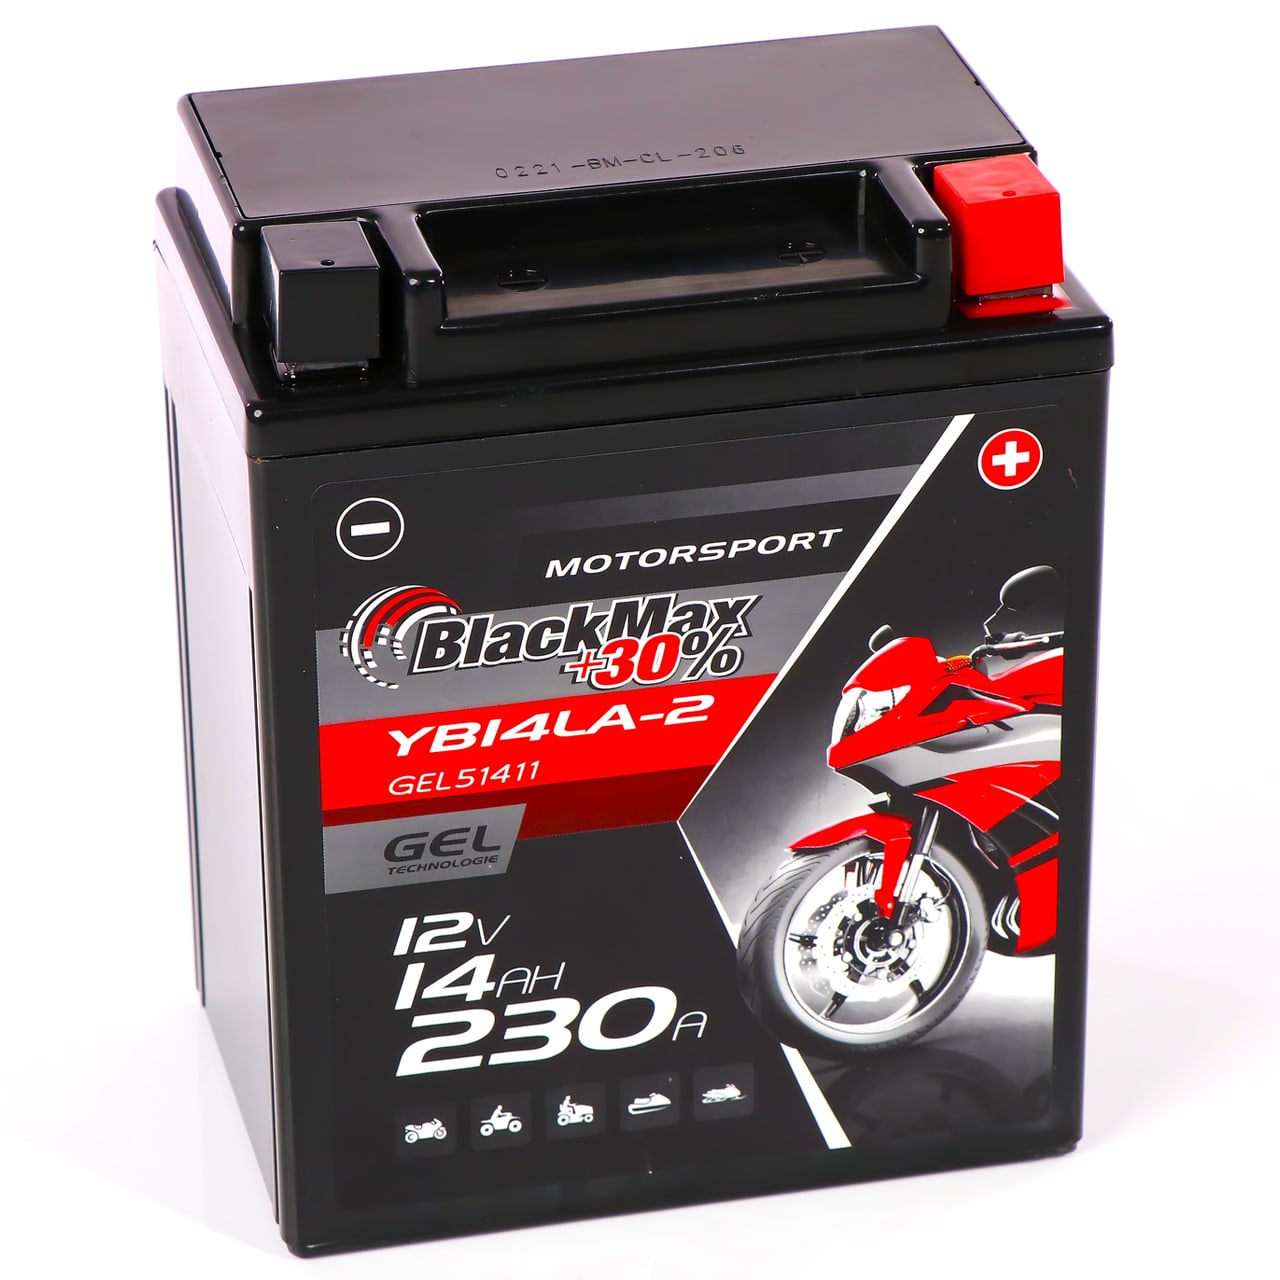 BlackMax YB14LA-2 Motorradbatterie GEL 12V 14Ah CB14LA-2